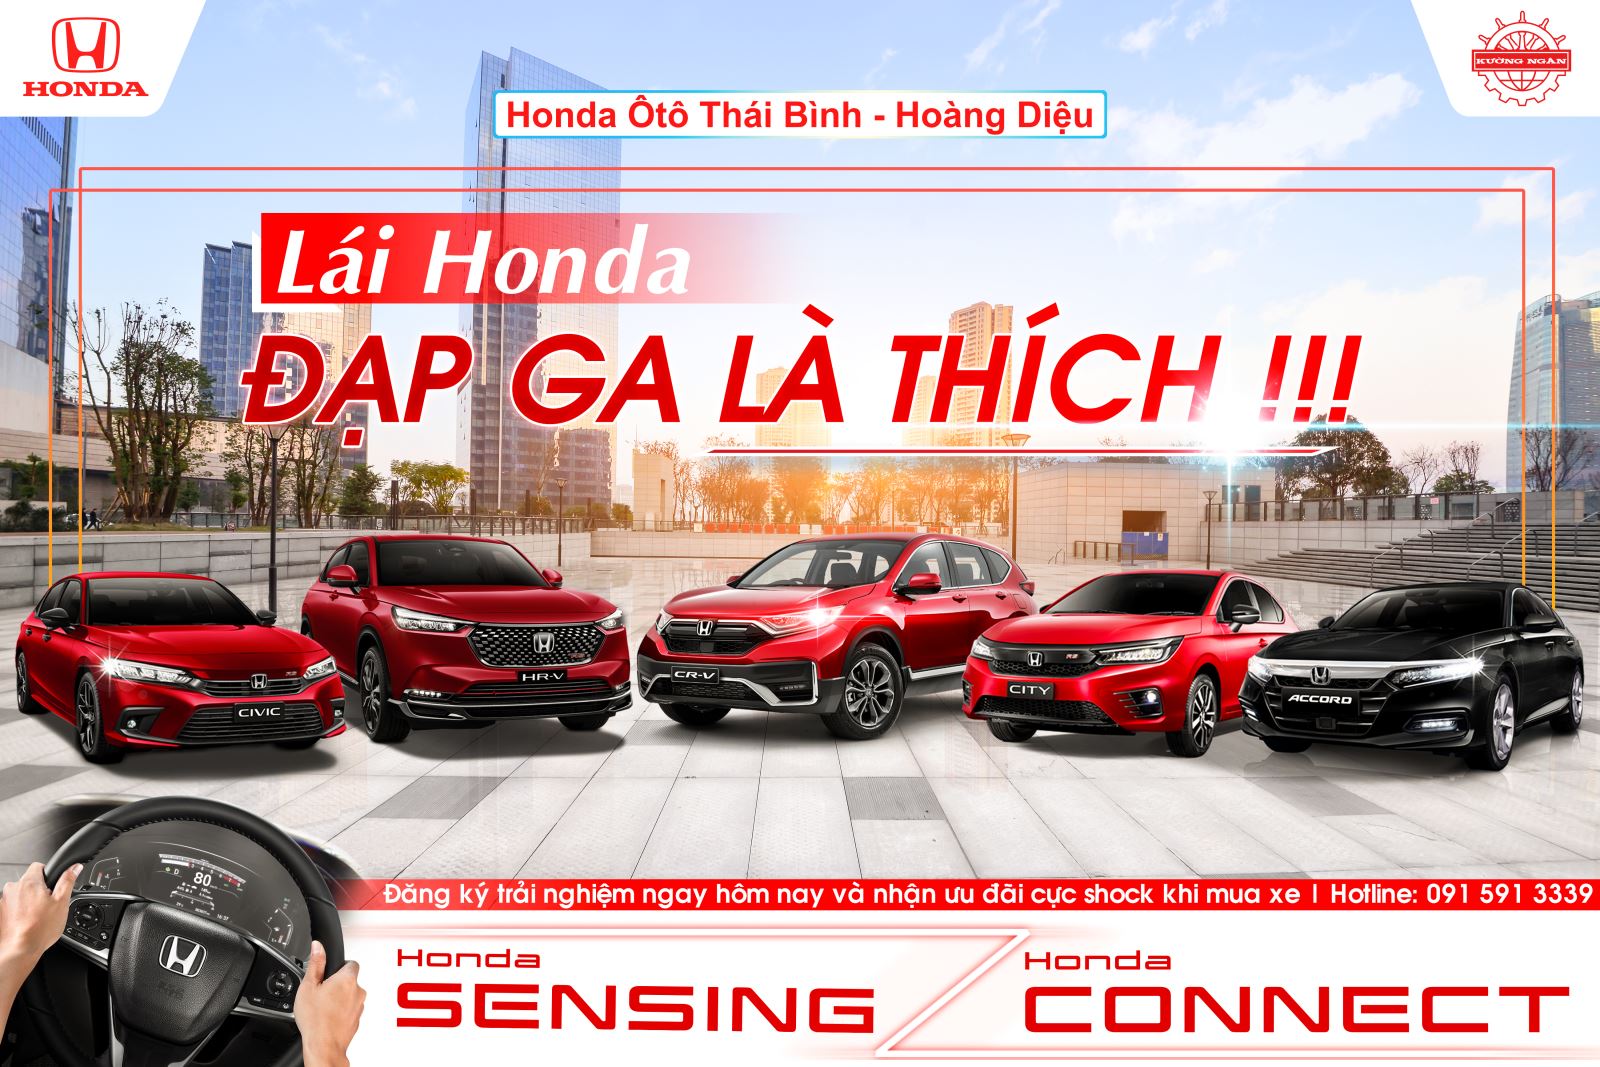 Các mẫu xe Honda đang phân phối tại Việt Nam - Honda CR-V, Honda HR-V, Honda City, Honda Accord, Honda Civic